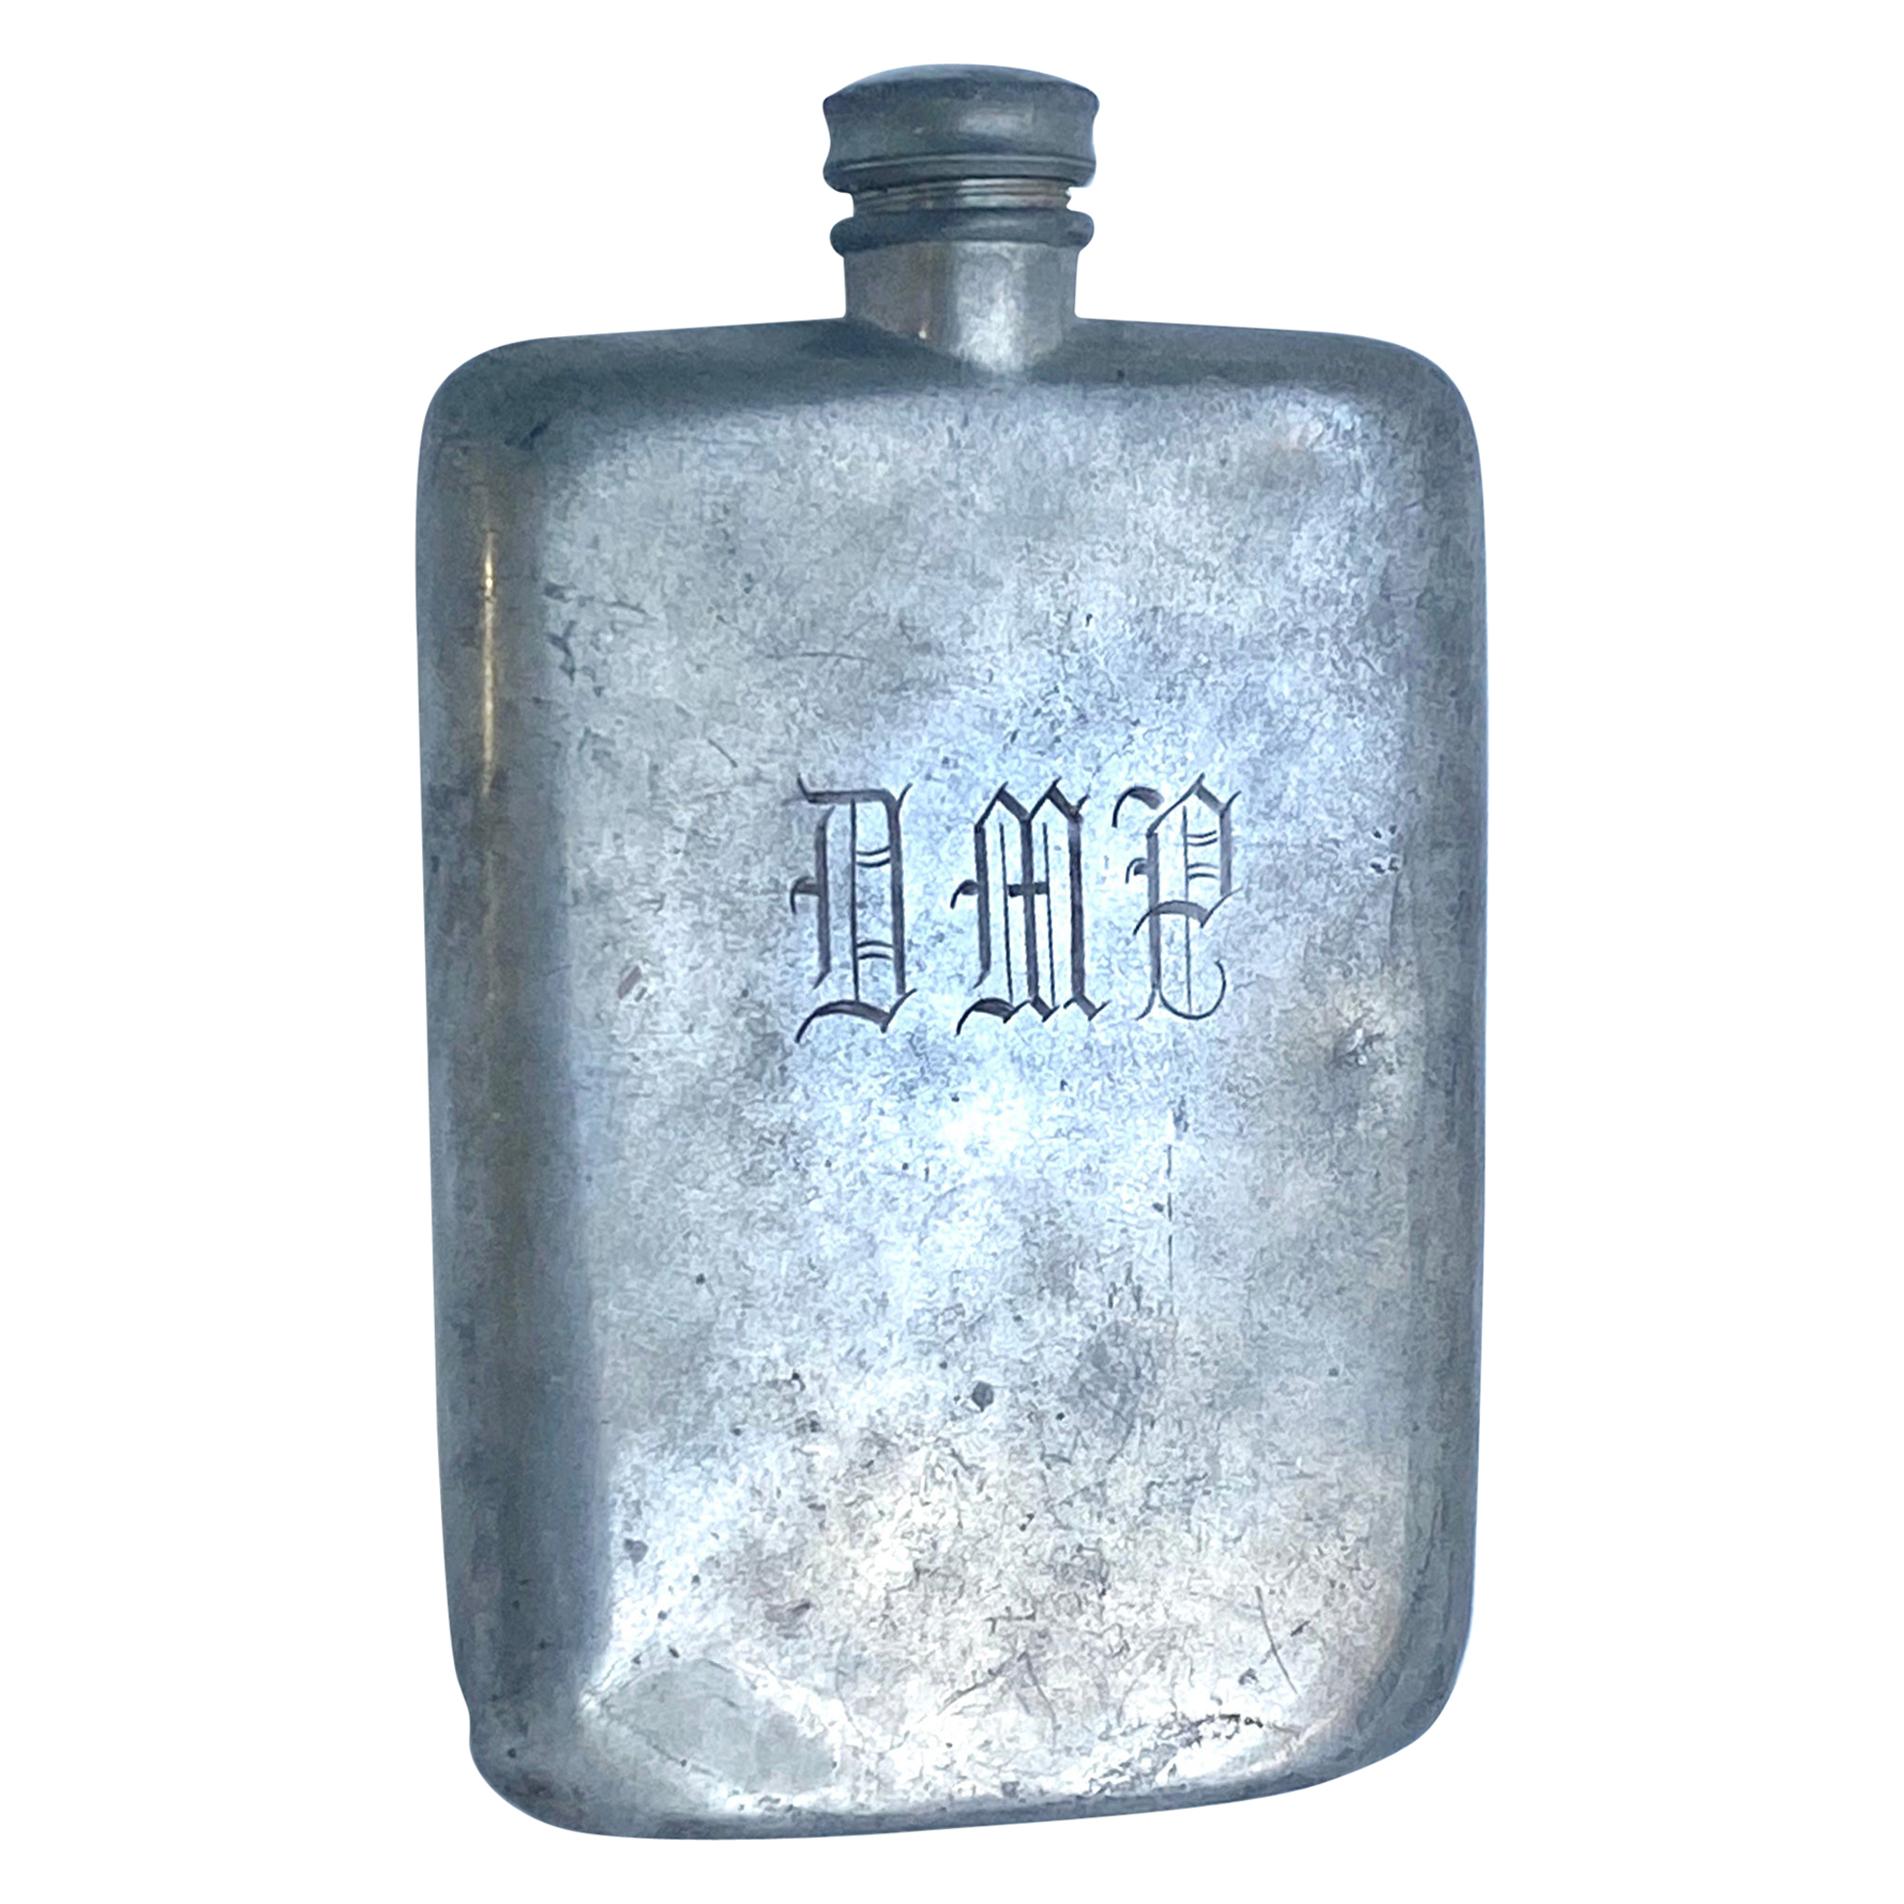 Large 16 Oz Sheffield James Dixon & Son's Liquor Hip Flask with Monogram